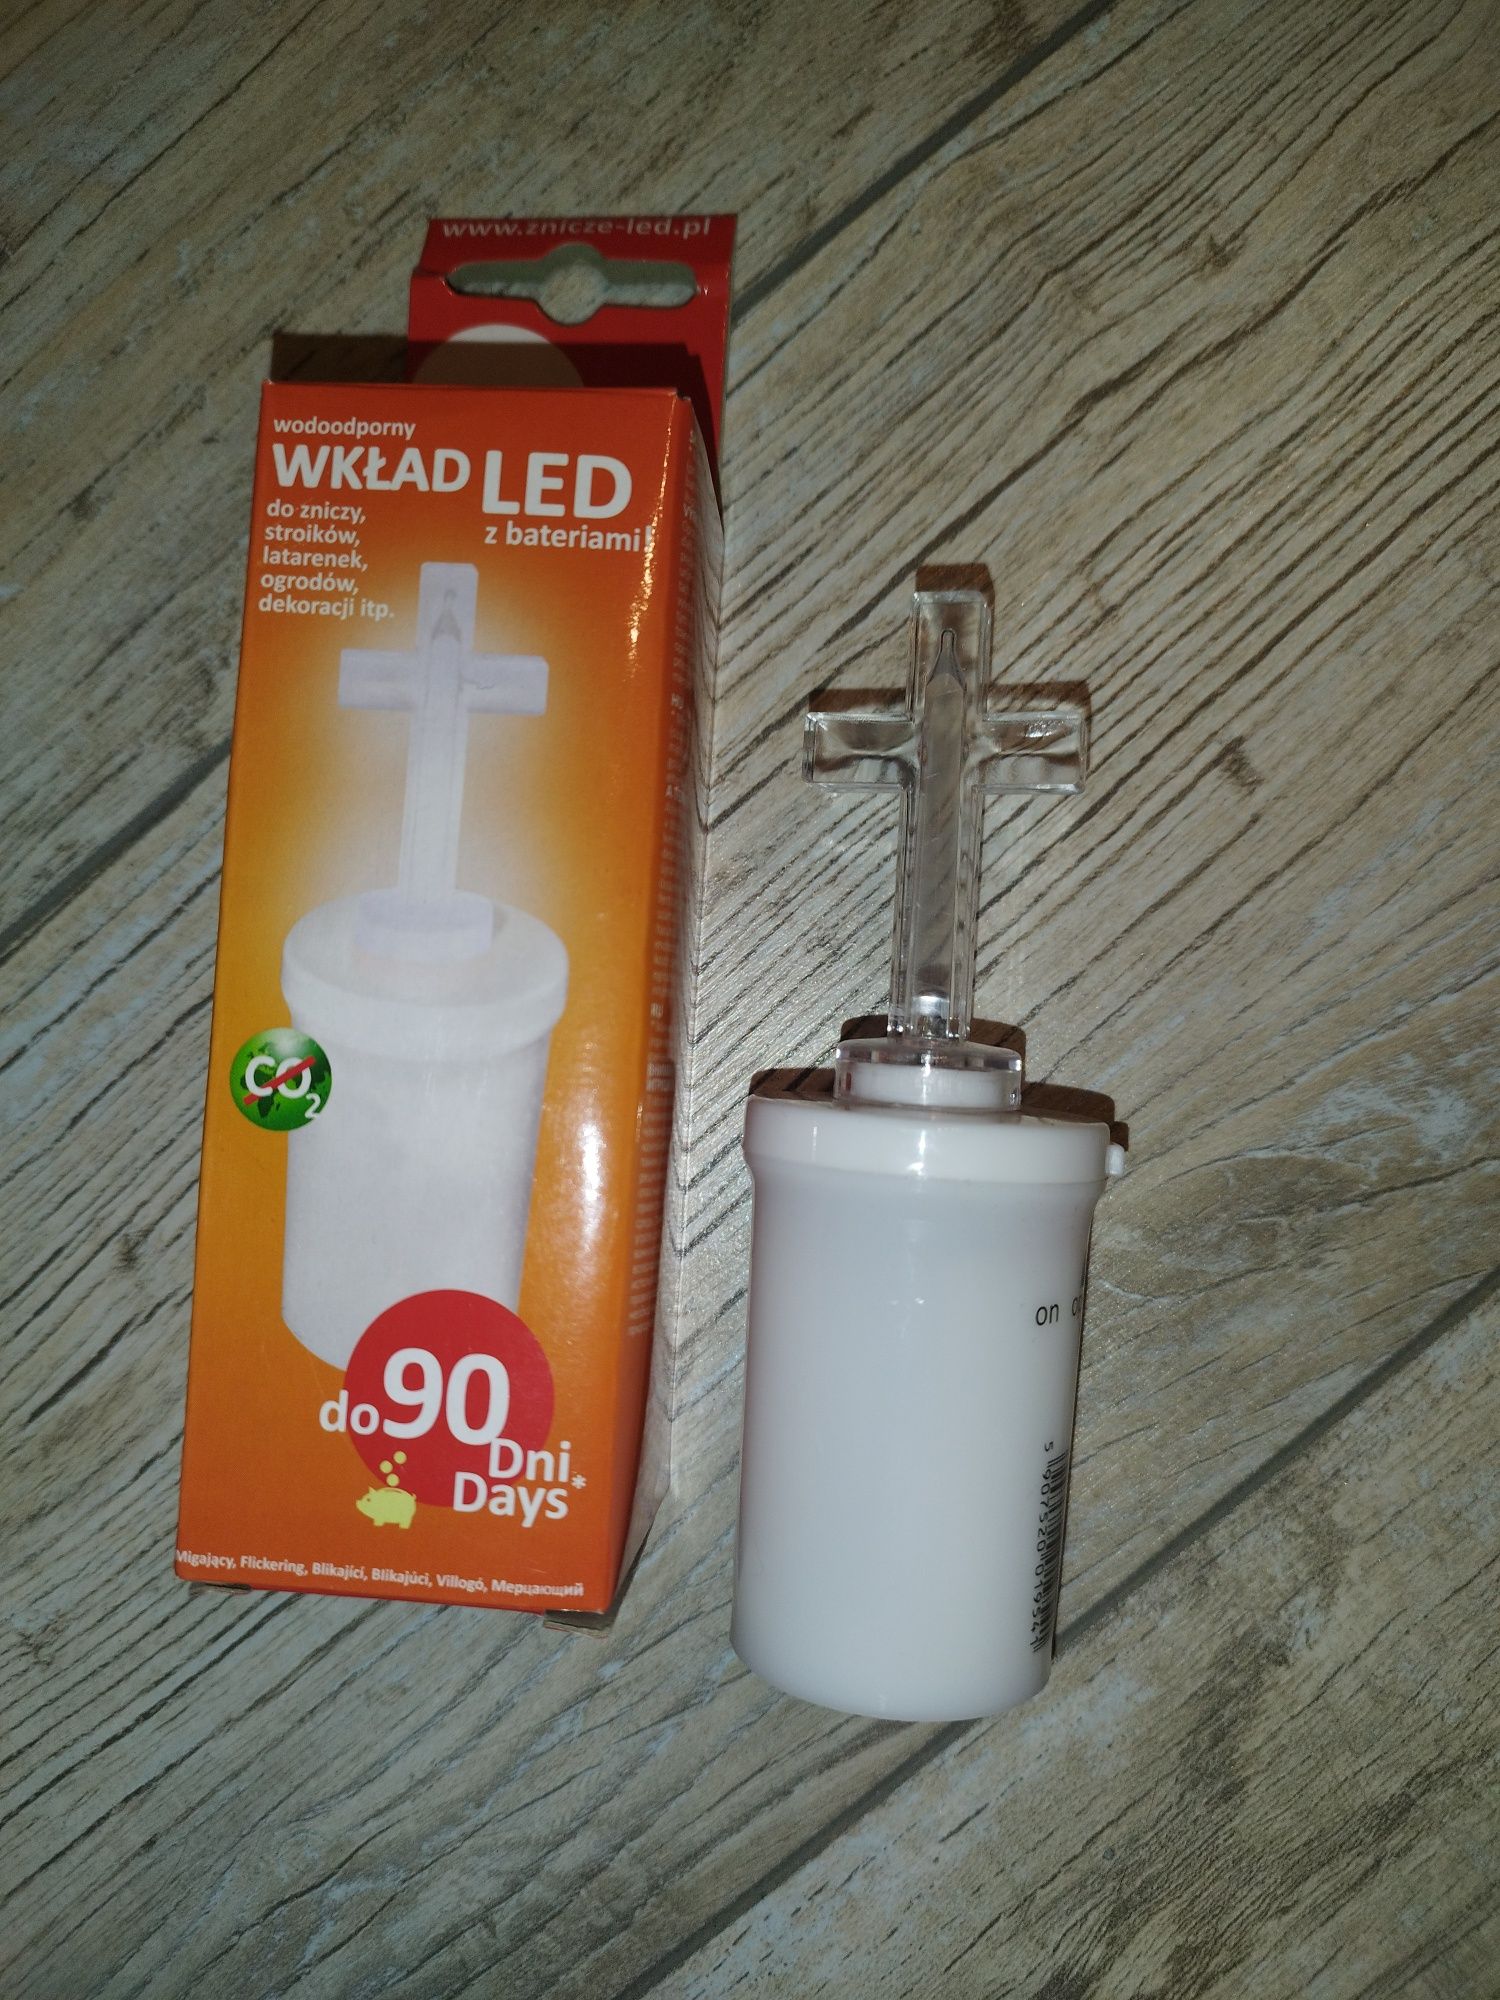 Nowy wkład LED krzyż z bateriami do stroika, lampionu, latarenki 2 szt